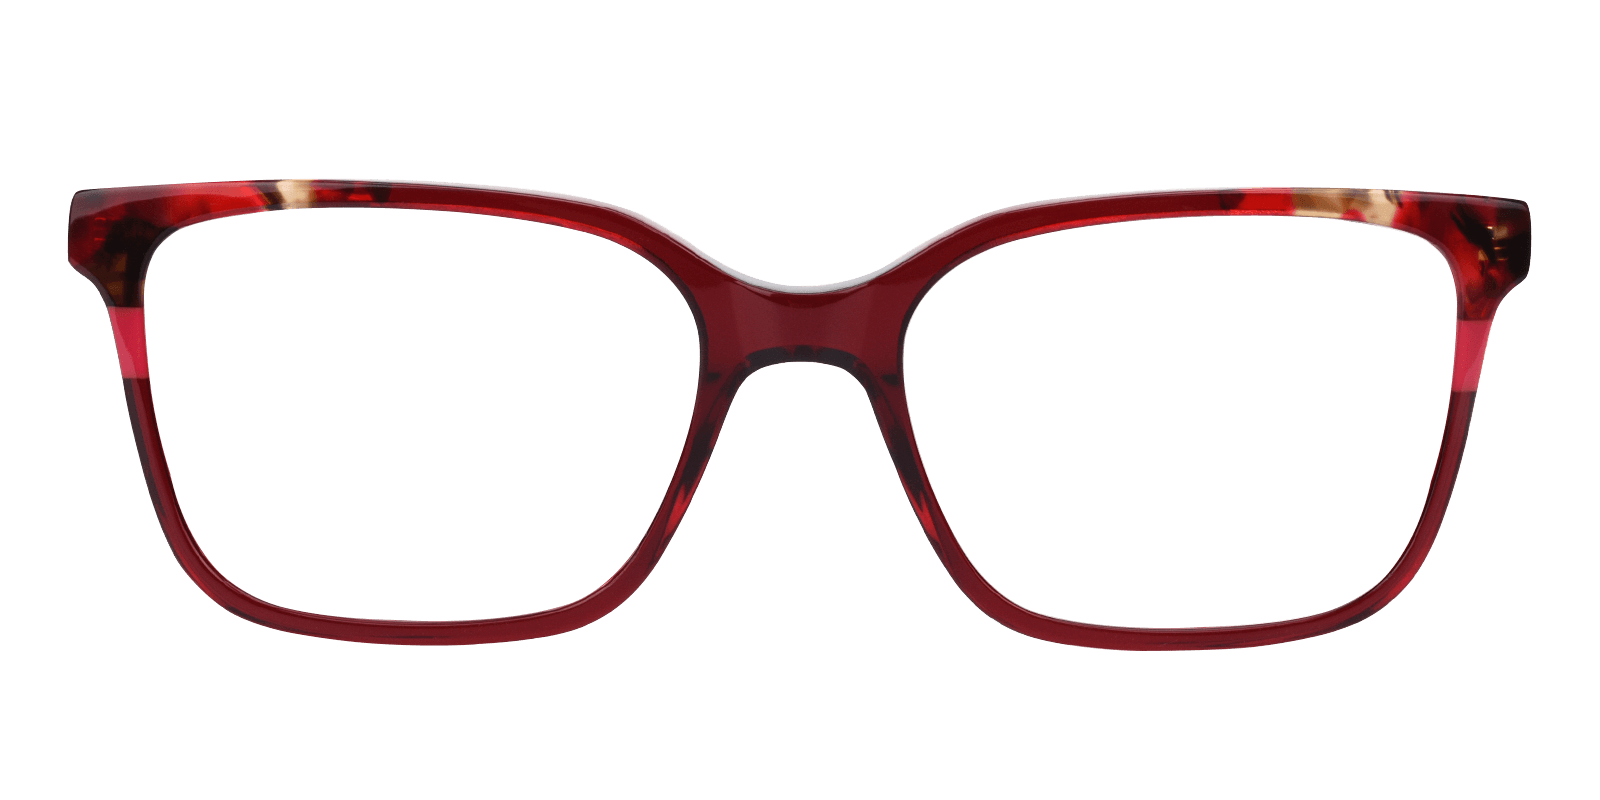 Cheap Glasses Online Cheap Eyeglasses Abbe Glasses